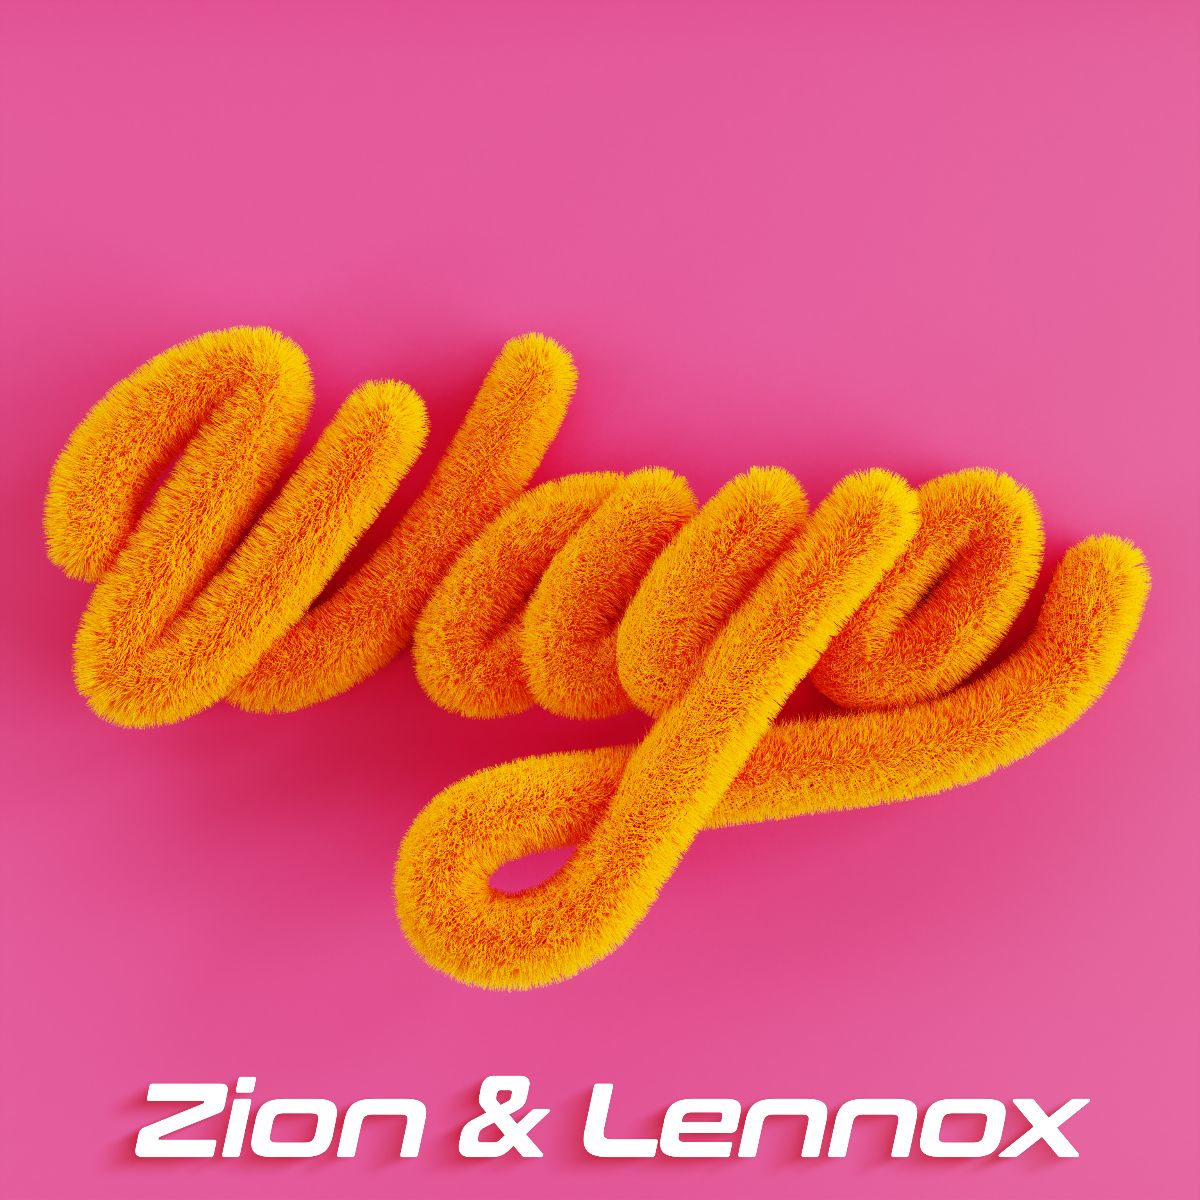 ZION & LENNOX lanza nuevo sencillo “Wayo”